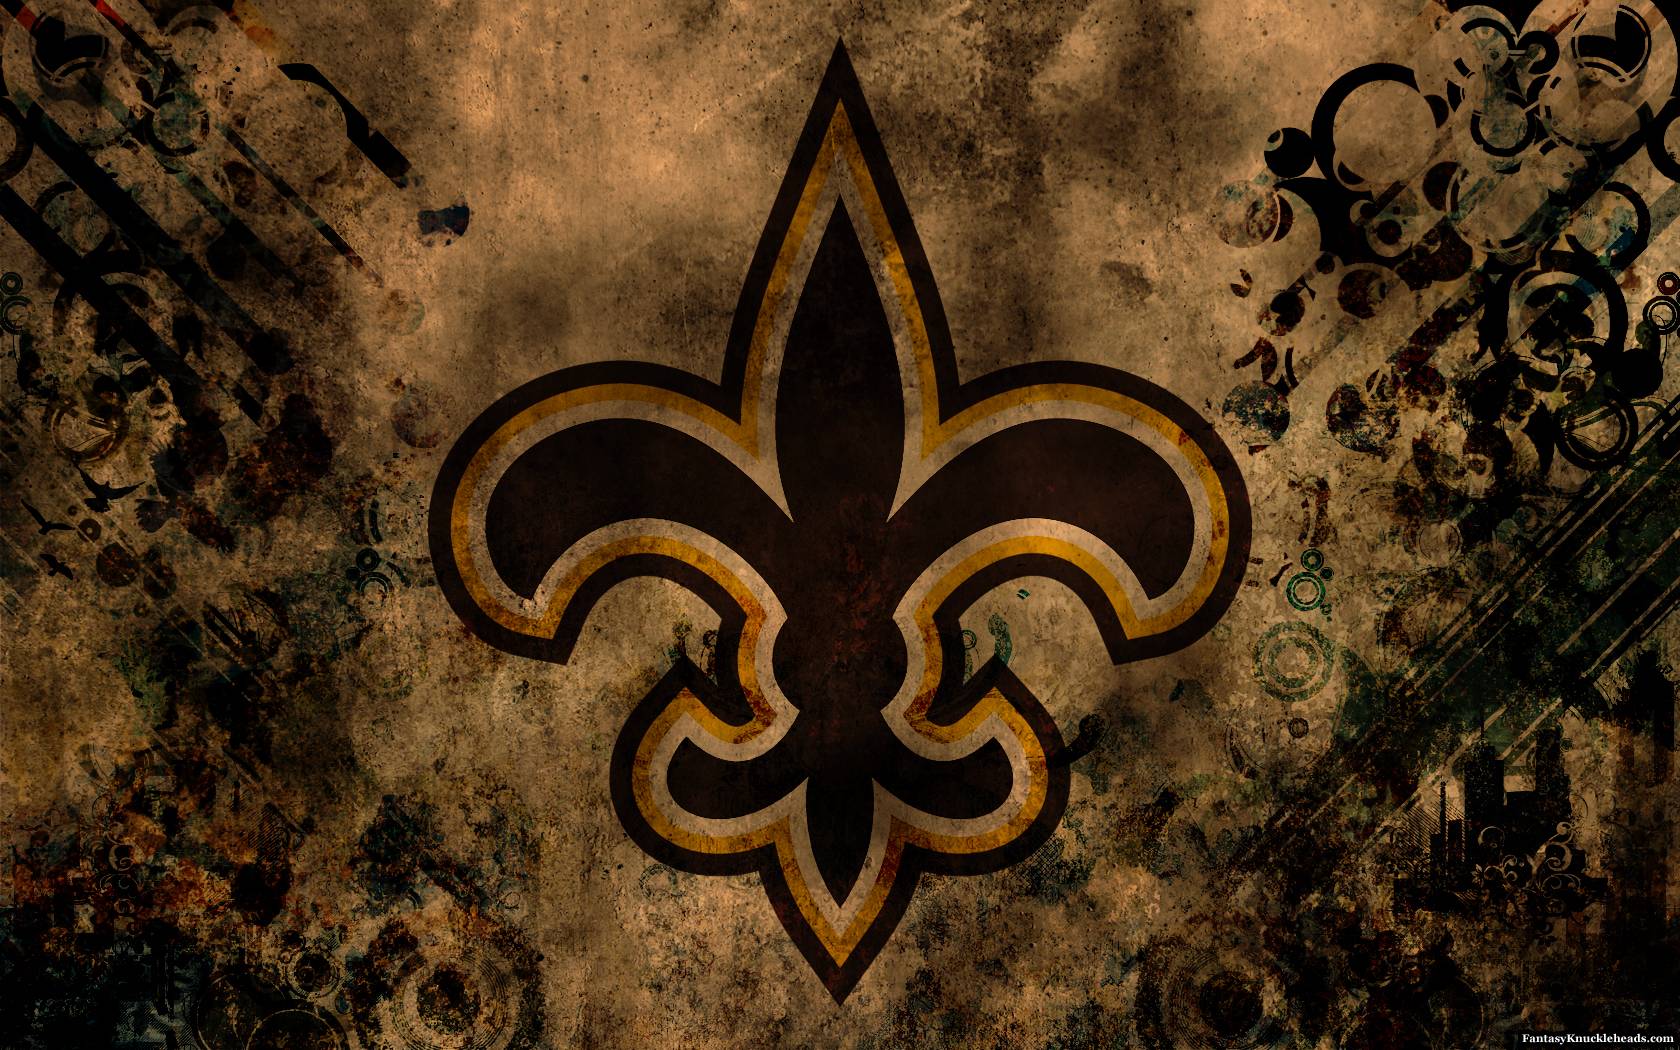 New Orleans Saints wallpaper HD background. New Orleans Saints